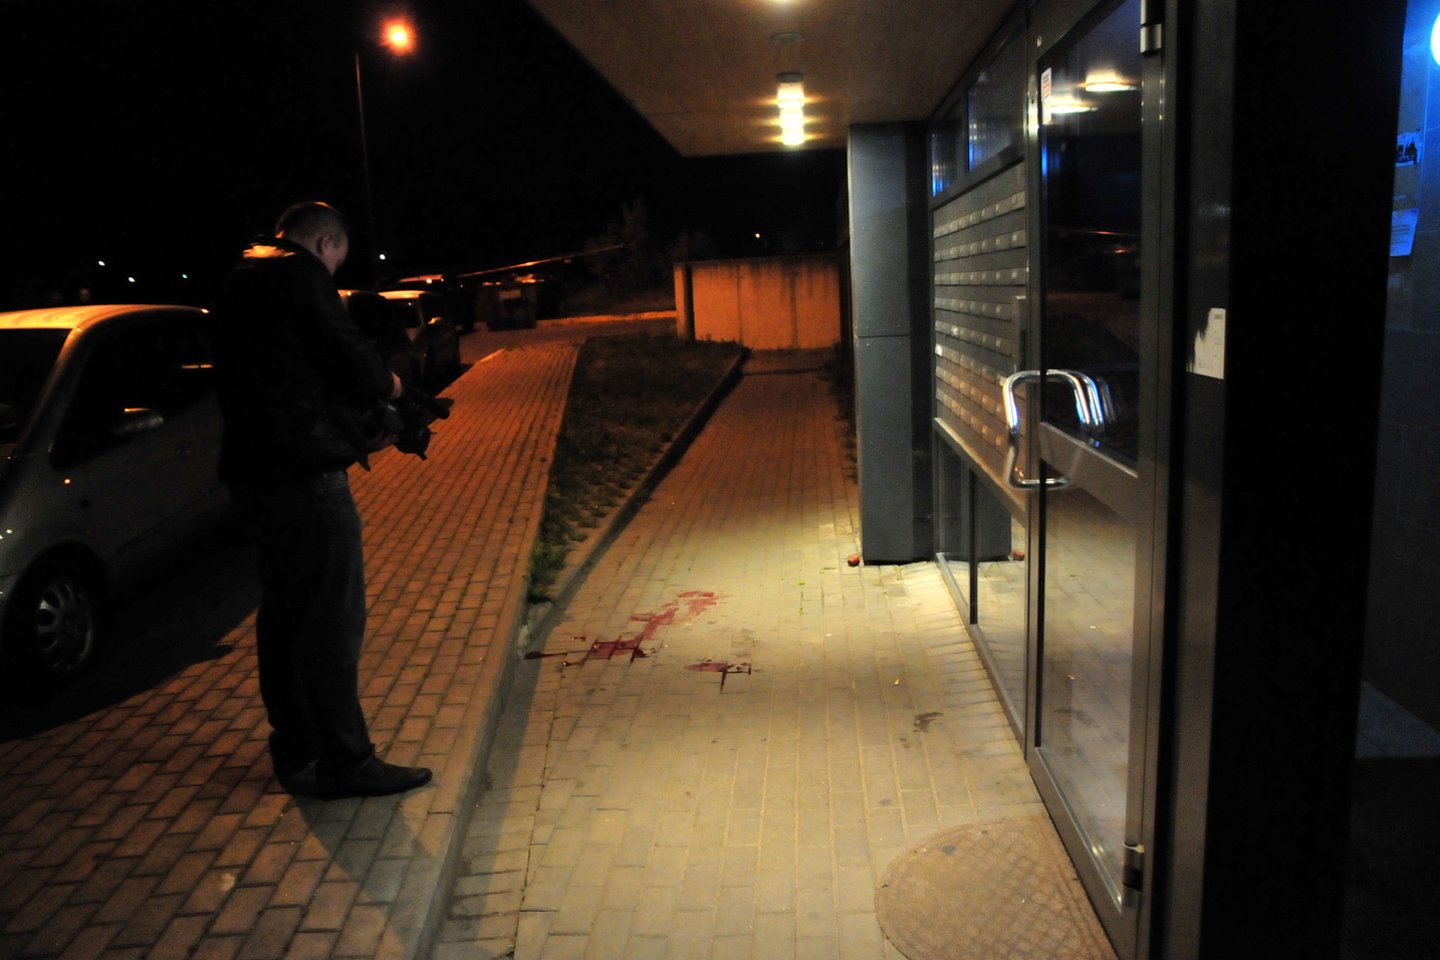  2014 m. liepos 6 d. vėlų vakarą Vilniuje nušautas Igoris Tiomkinas – kažkada buvusios galingos gaujos „Vilniaus brigada“ vienas iš vadeivų. <br> A.Vaitkevičiaus archyvinė nuotr.